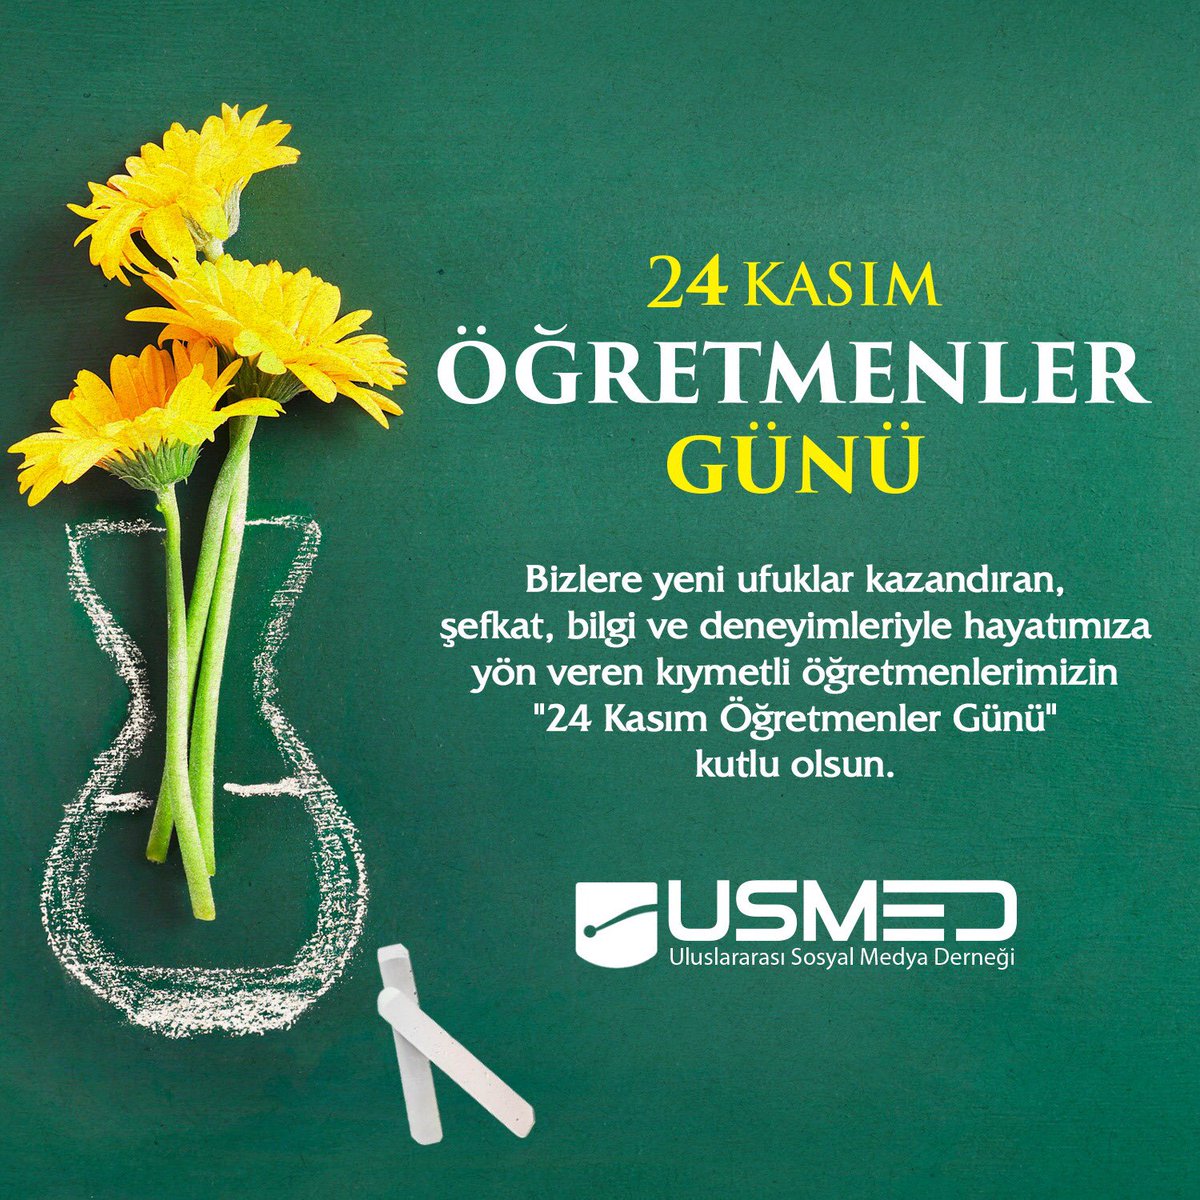 24 Kasım Öğretmenler Günü kutlu olsun. 💐 #24KasımÖgretmenlerGünü @saidercan